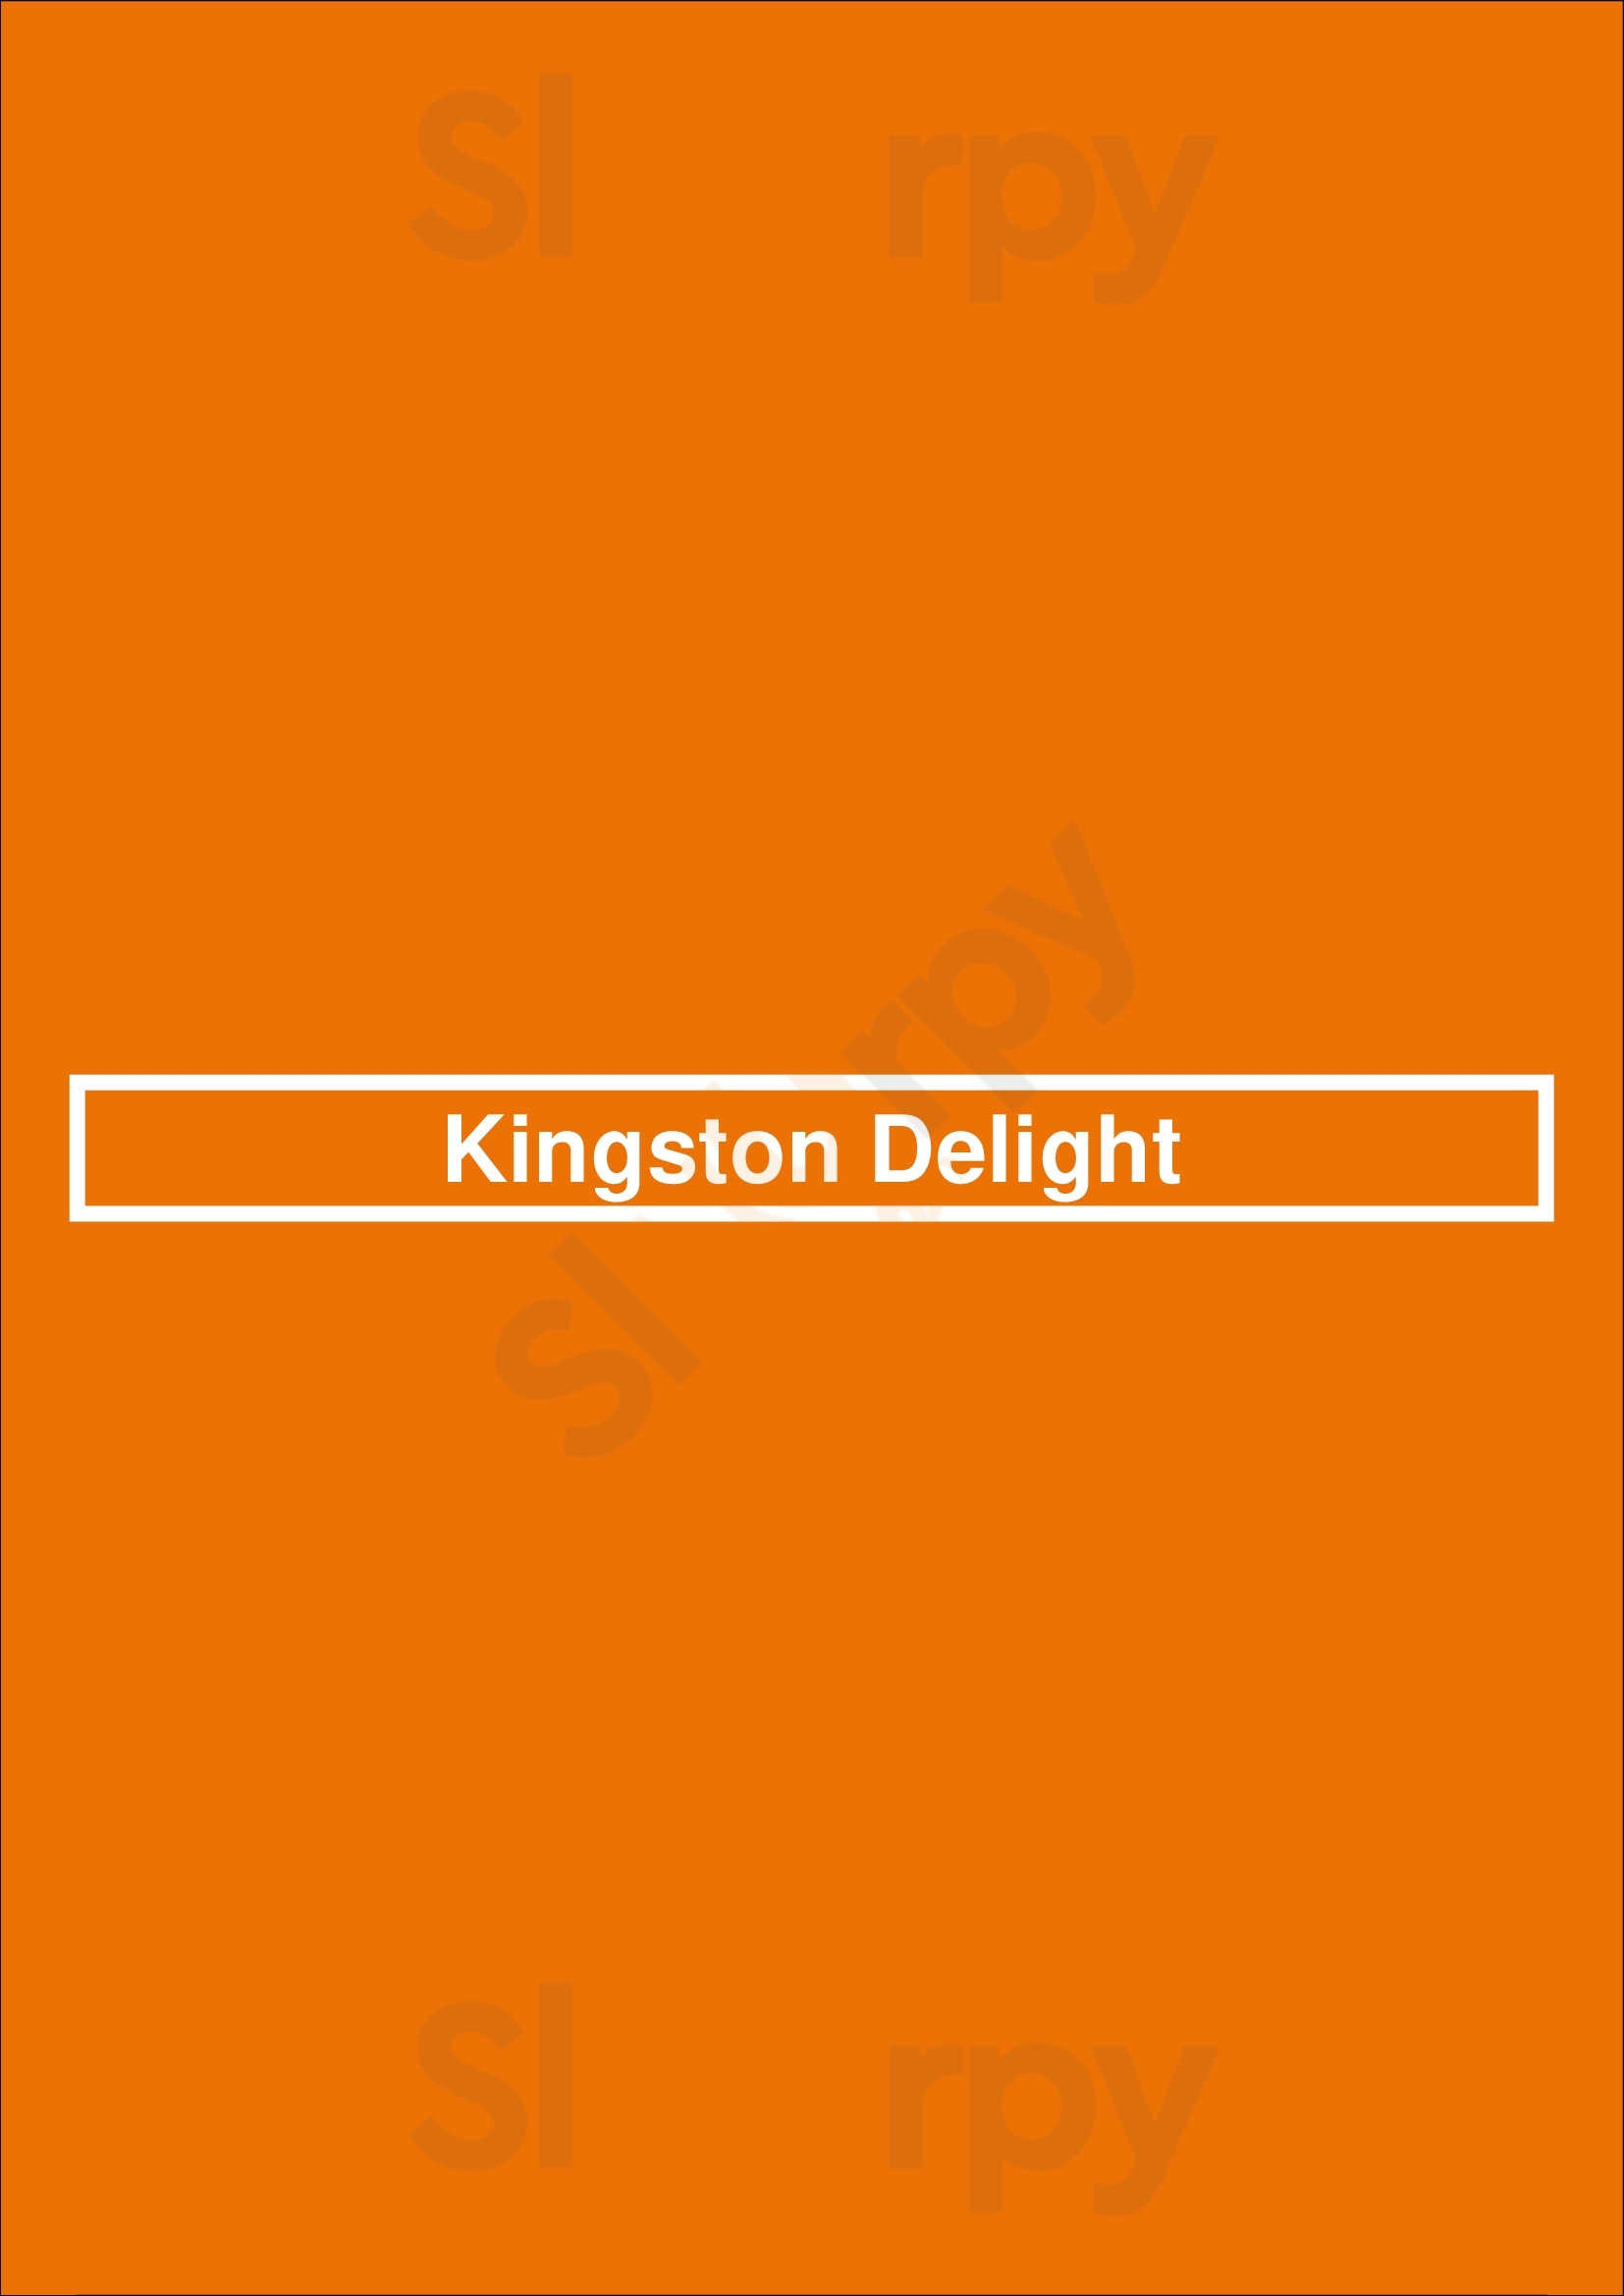 Kingston Delight Miami Menu - 1